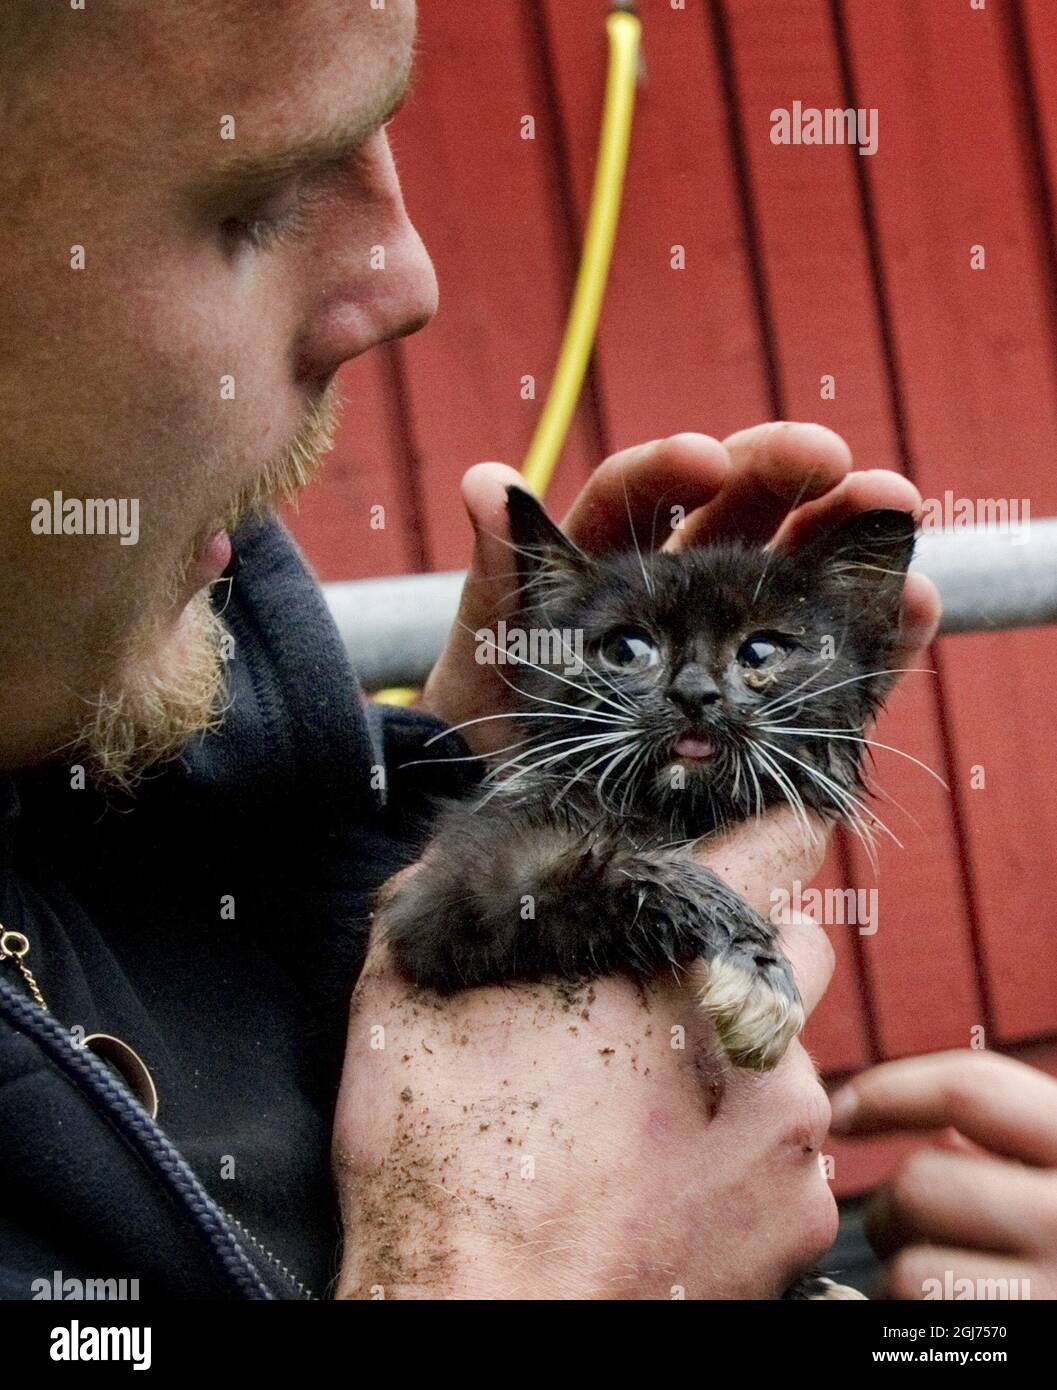 GÃ–TEBORG 2011-09-20 Christoffer Blidestedt gato rescatador. El gato ha  estado atrapado en una tubería subterránea durante 24 horas en Gotemburgo.  PLUMMERS ha trabajado el turno de noche para tratar de atraer al